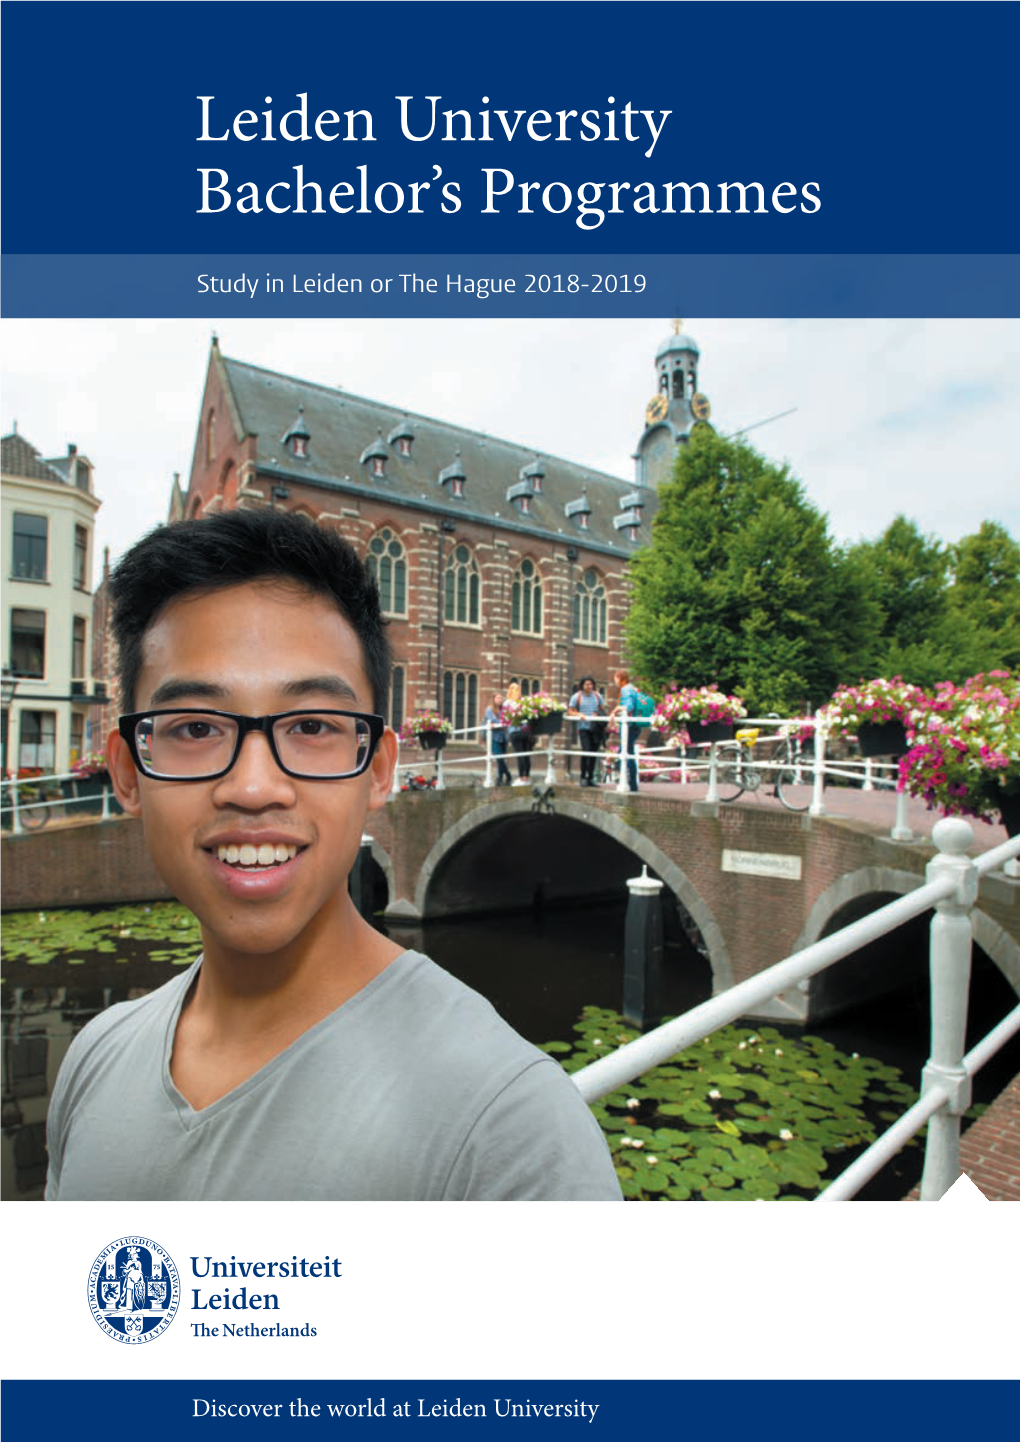 Leiden University Bachelor's Programmes